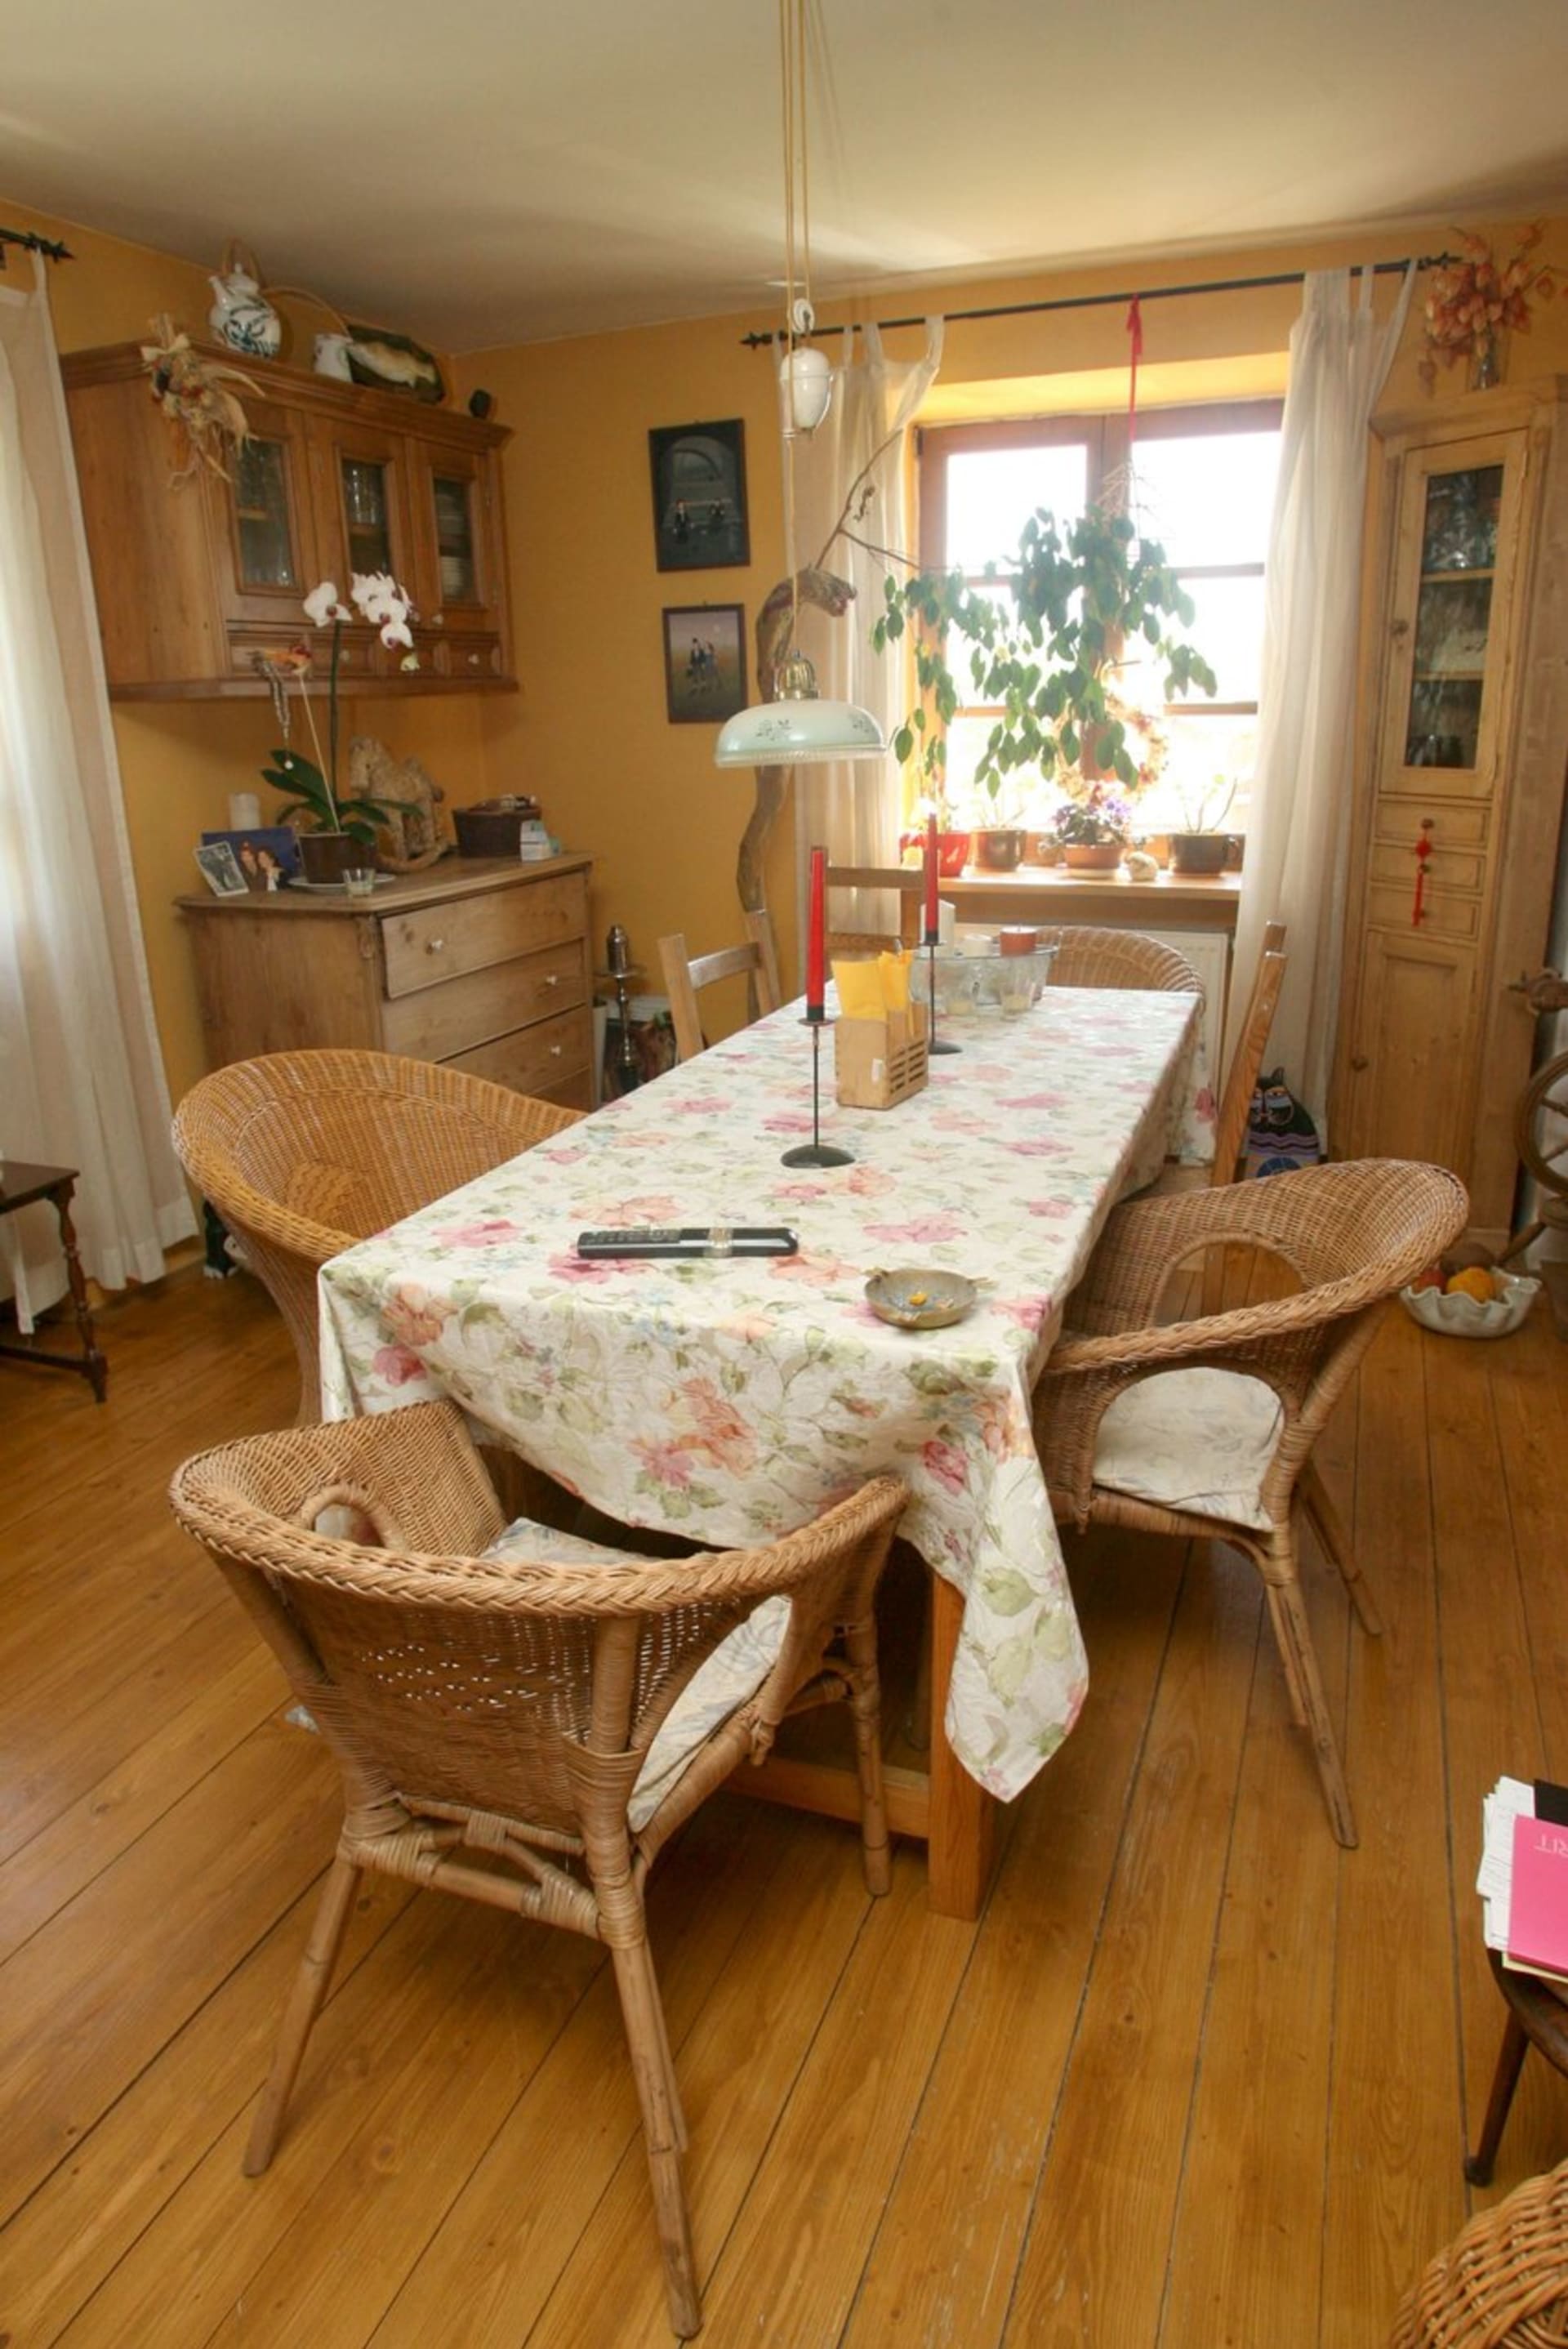 V jídelně je ratanové sezení a bytelný dřevěný stůl